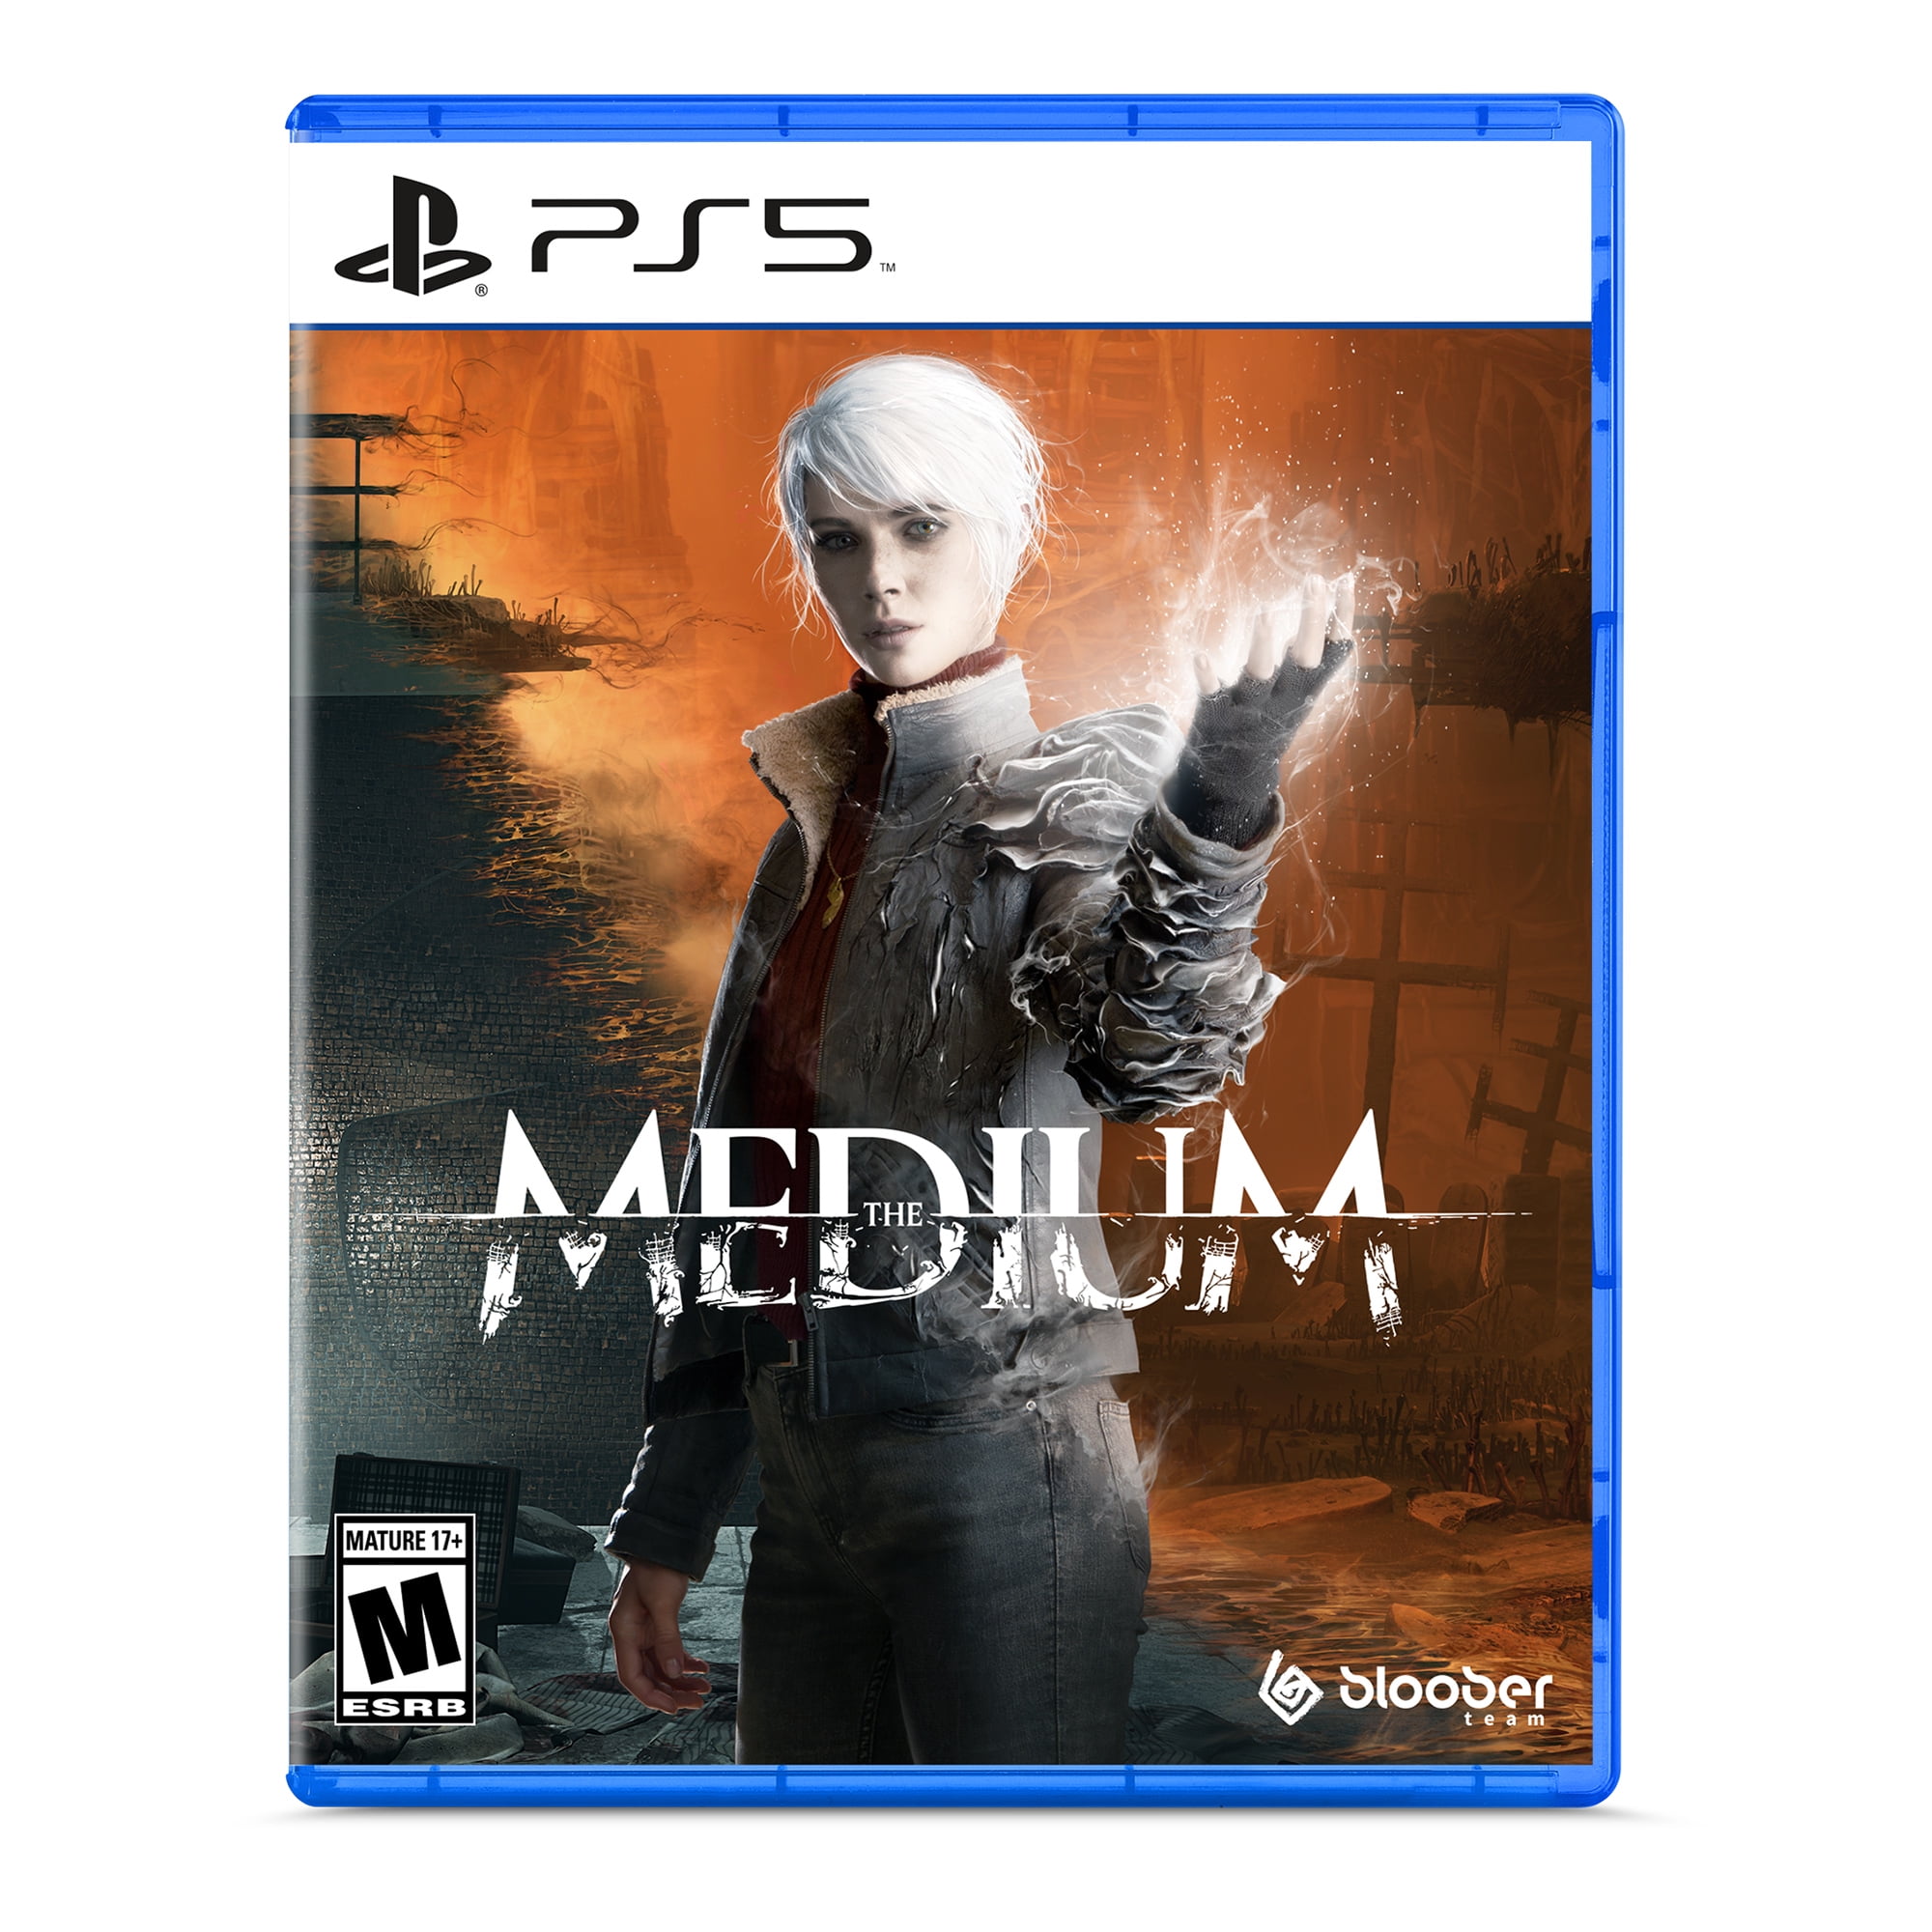 The Medium, Ps Plus Deluxe - Premium, Gameplay